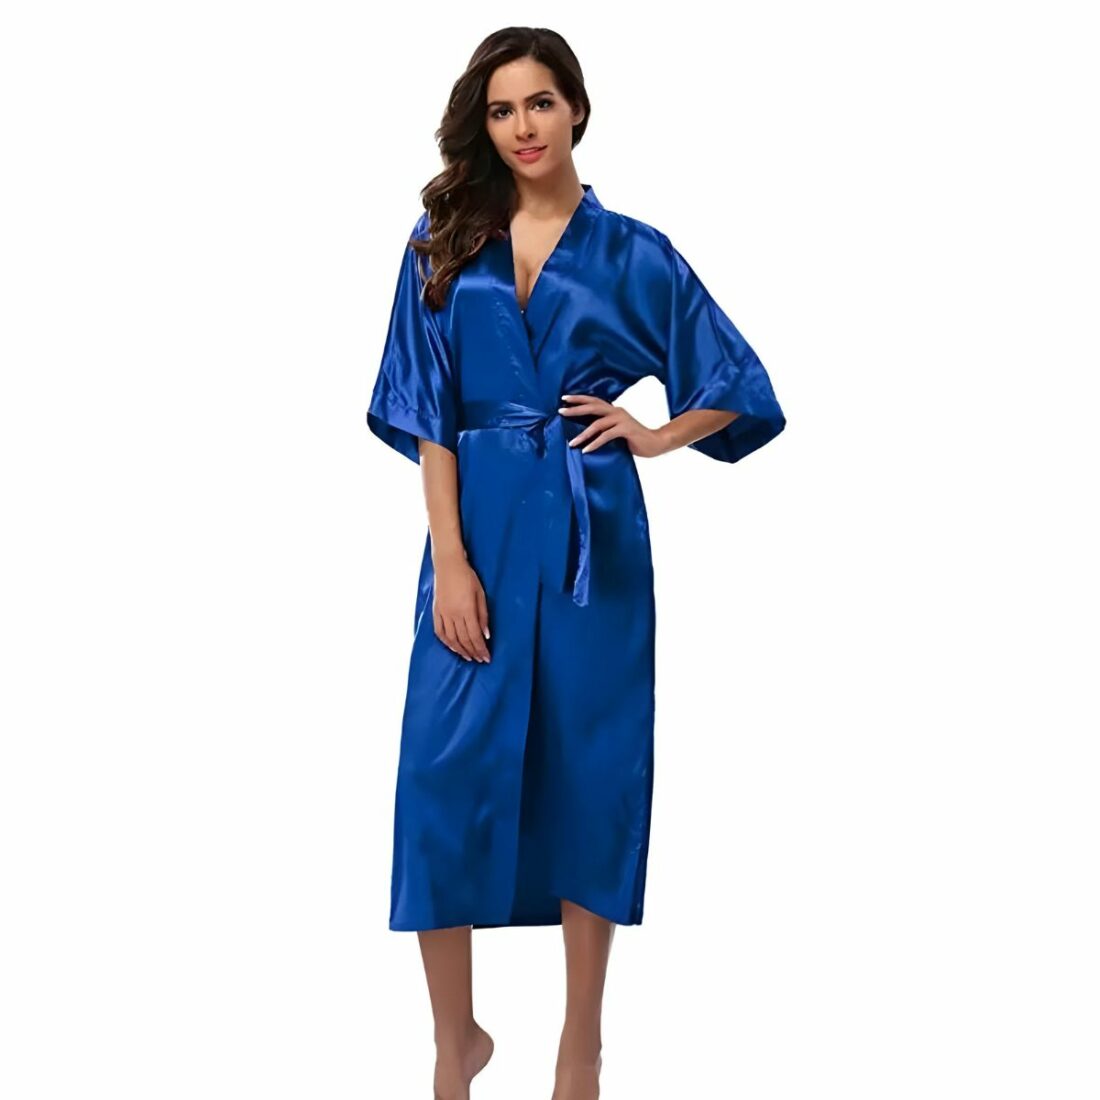 Robe de chambre longue unie en satin pour femme IMG 15 02 robe chambre longue unie femme portee bleu